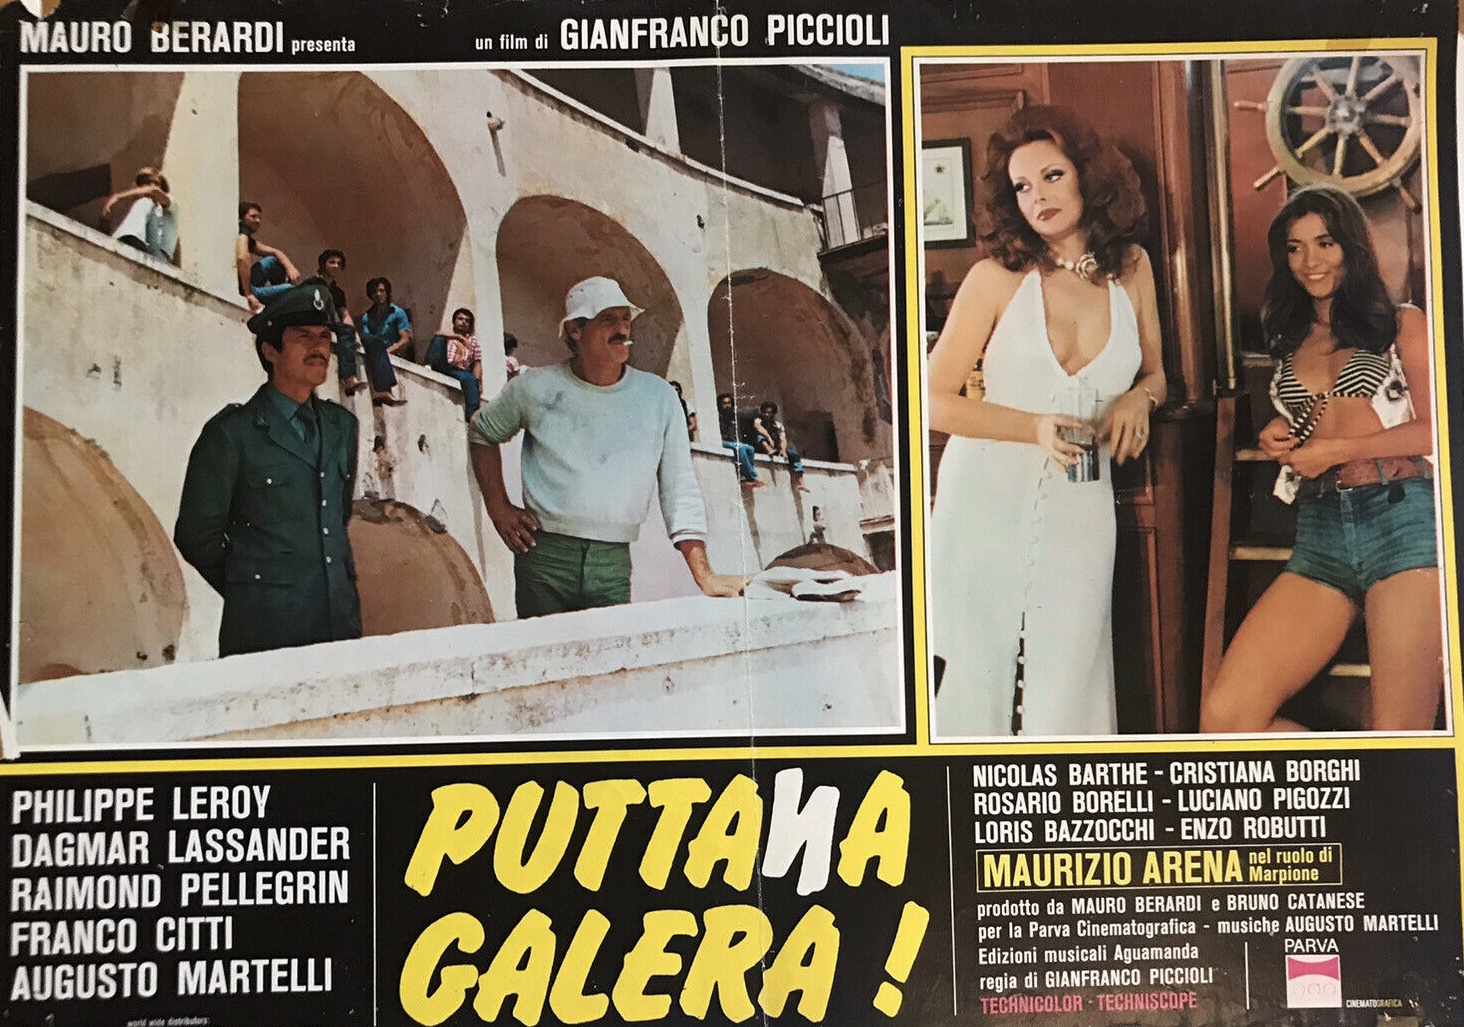 Puttana galera! (1976) Screenshot 1 